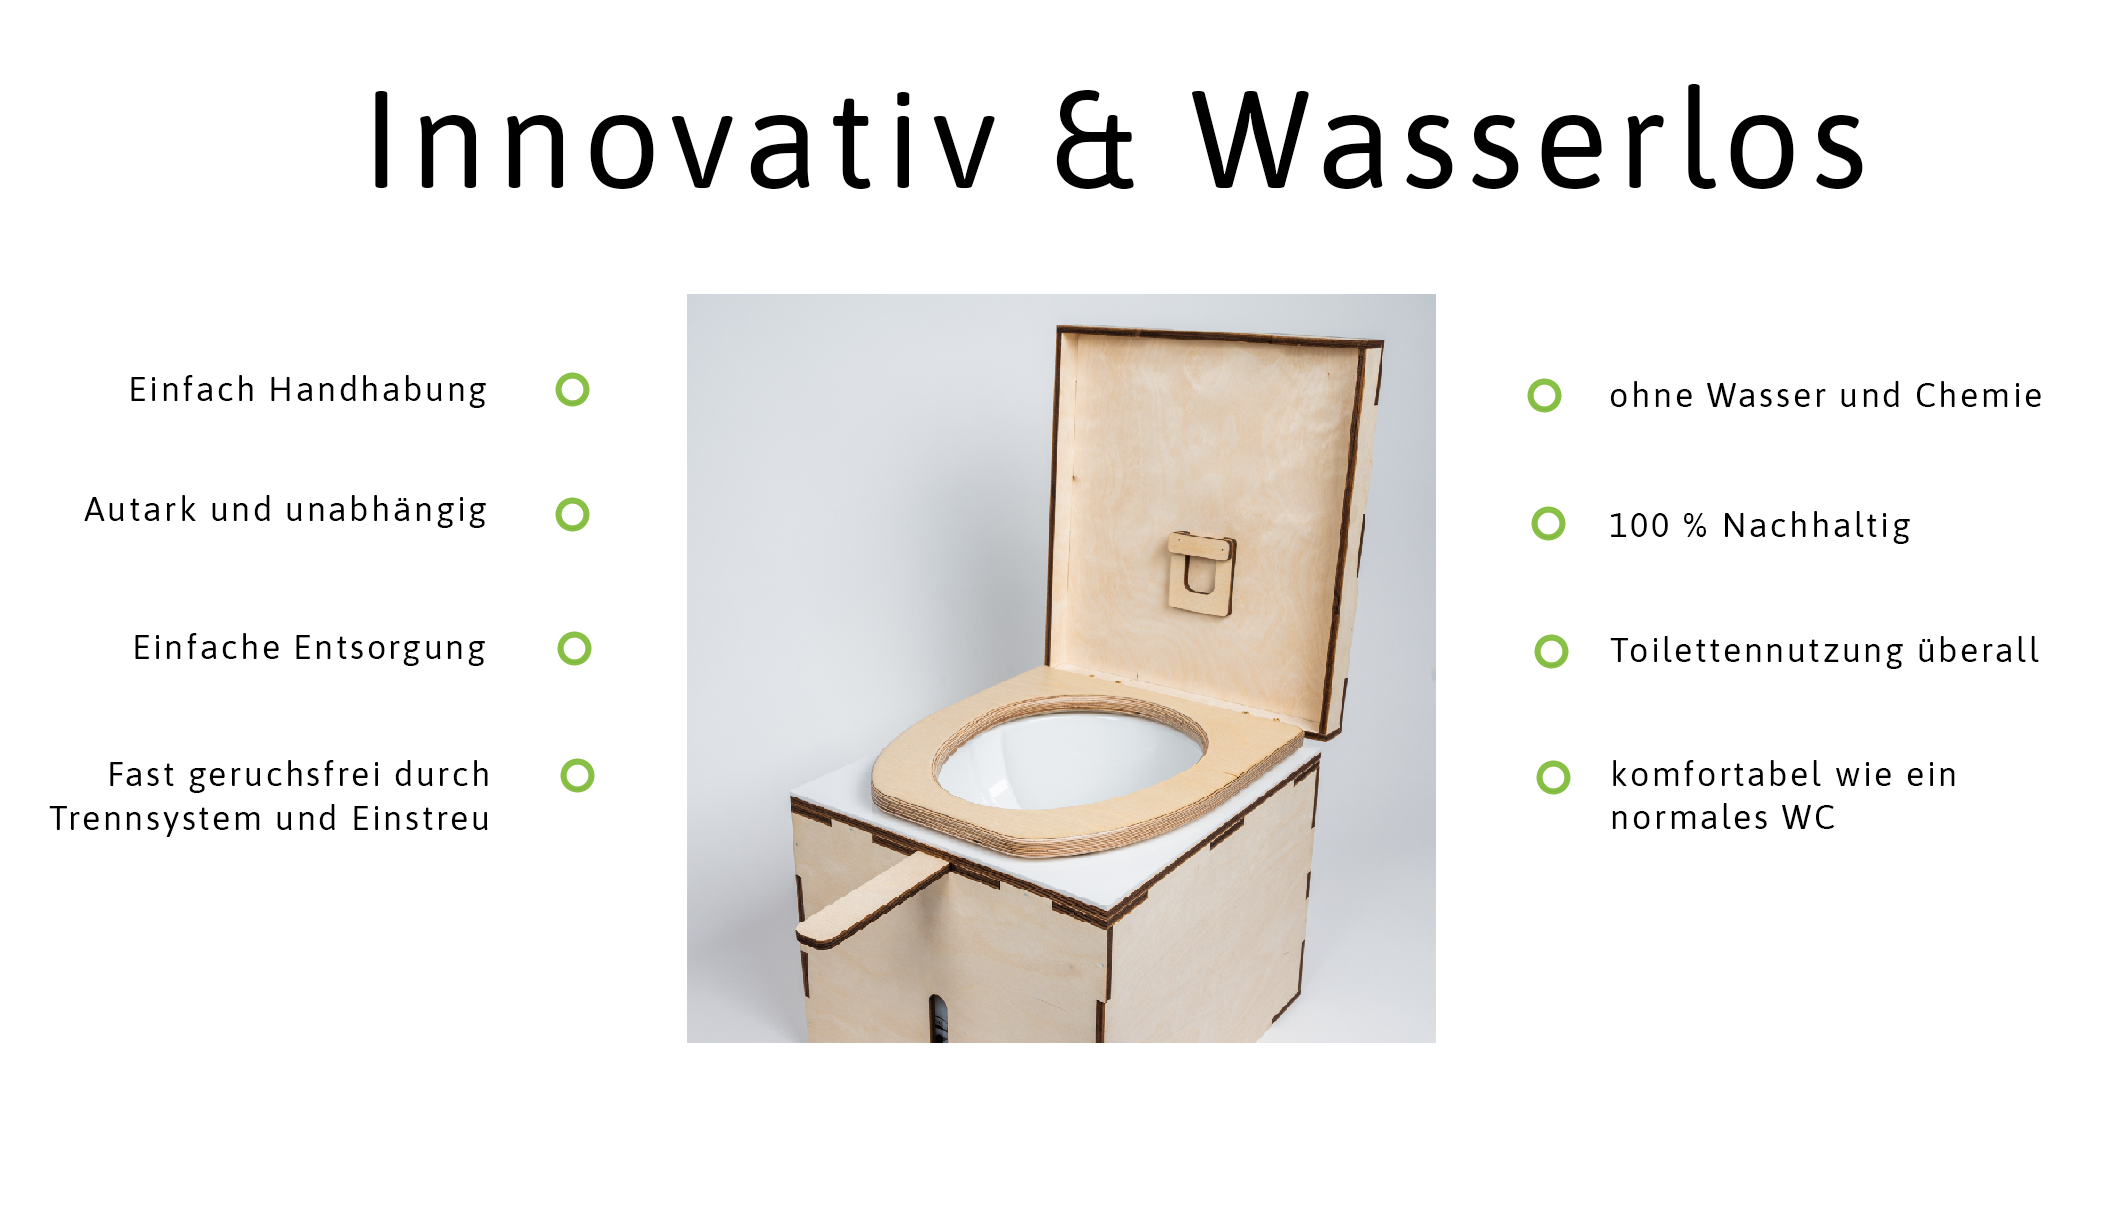 Vorteile einer wasserlosen Toilette von Kildwick: einfache Handhabung, autark und unabhängig, einfache Entsorgung, fast geruchsfrei, ohne Wasser und Chemie, 100% nachhaltig, Toilettennutzung überall und komfortabel wie ein normales WC